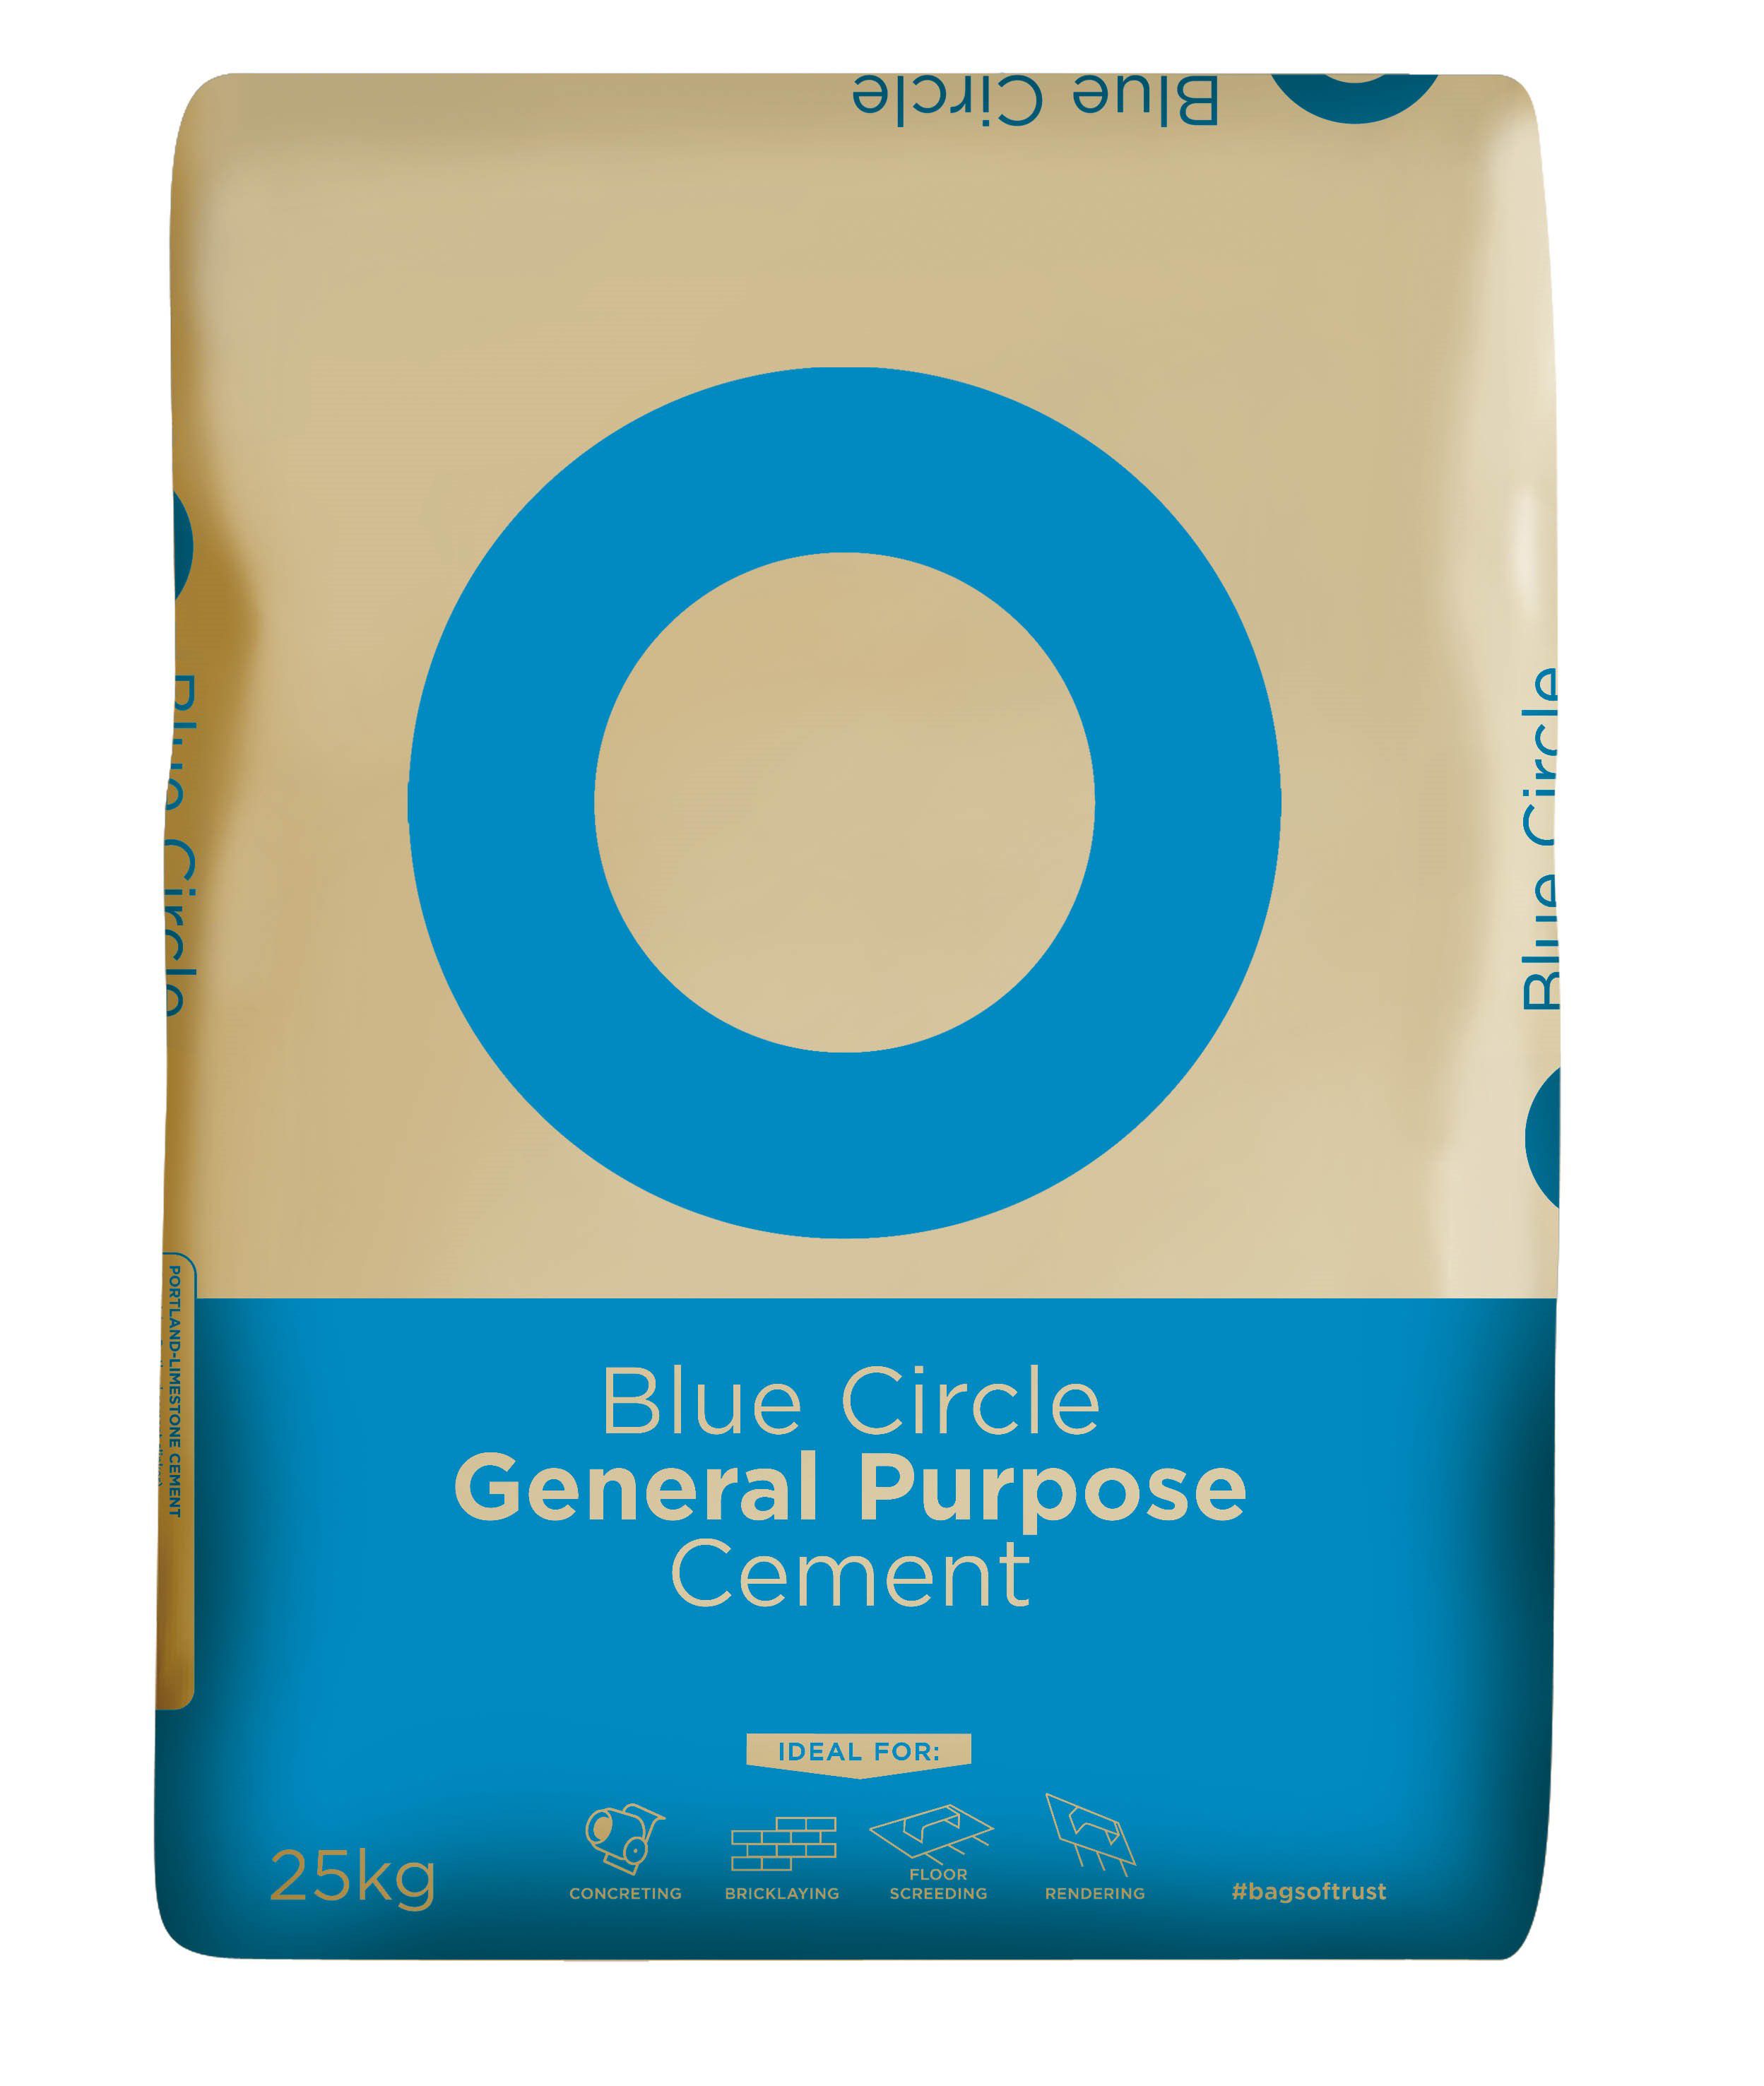 Blue Circle General purpose Cement 25kg Bag | Departments | DIY at B&Q